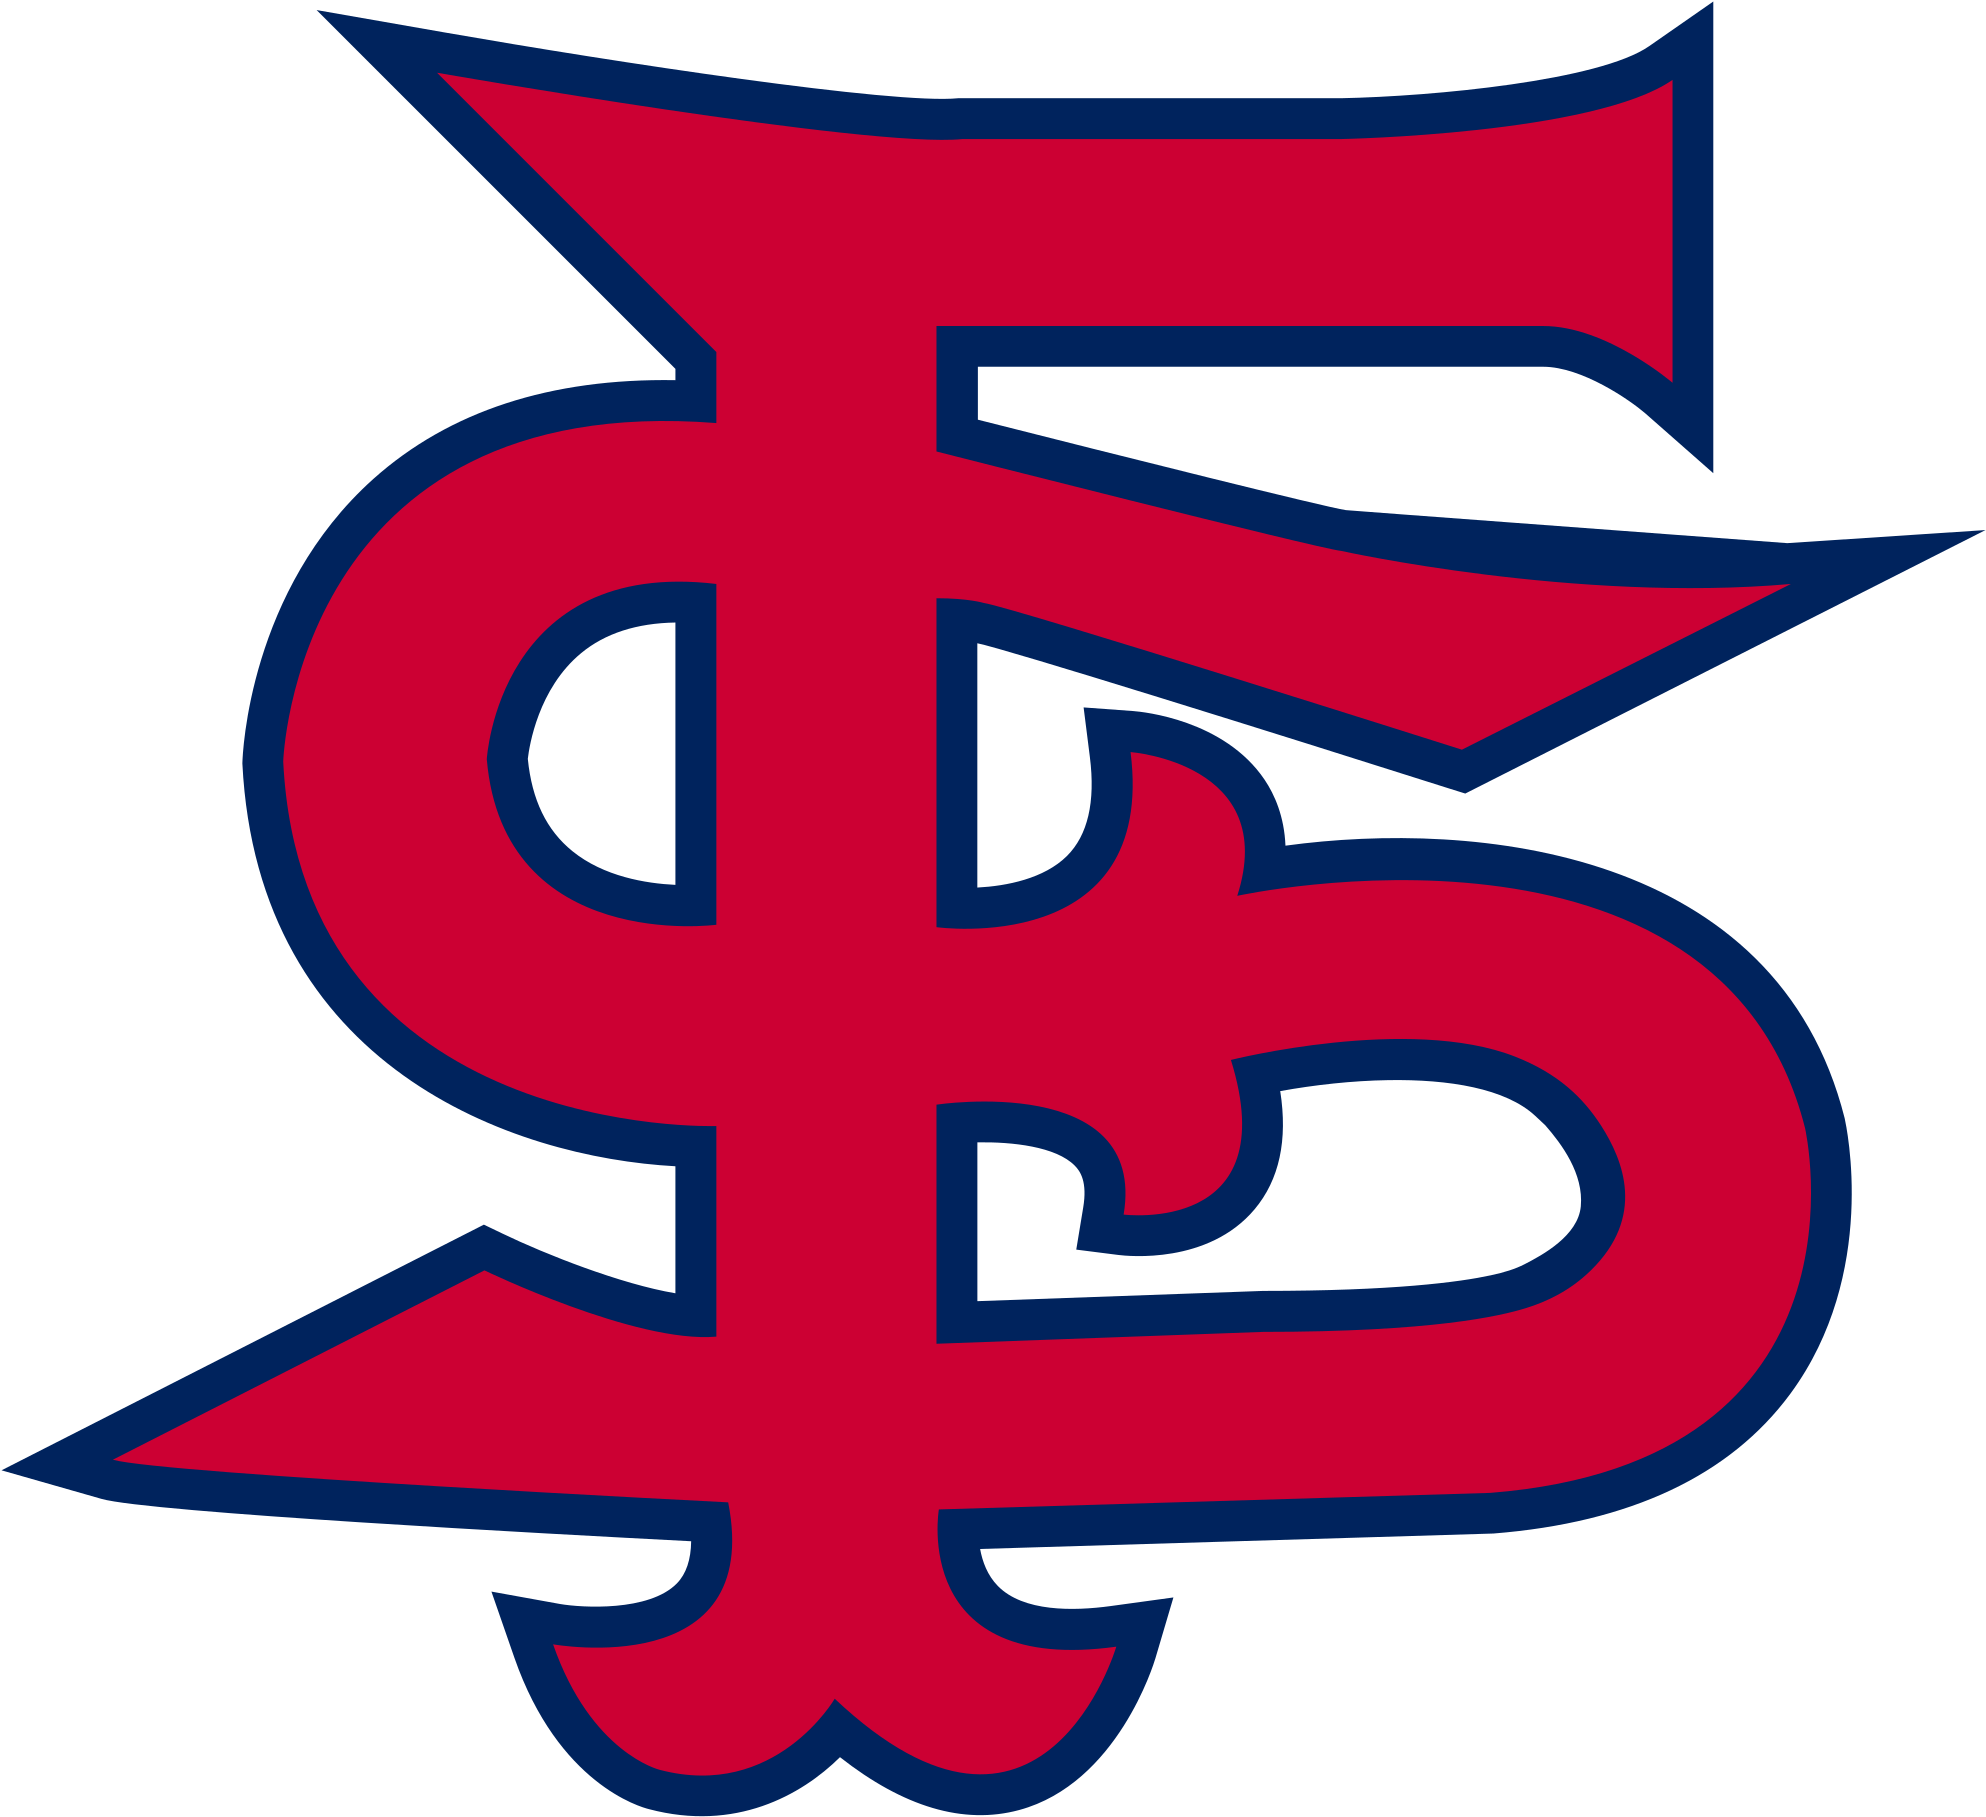 Open - Fresno State Bulldog Logo (2000x1832)